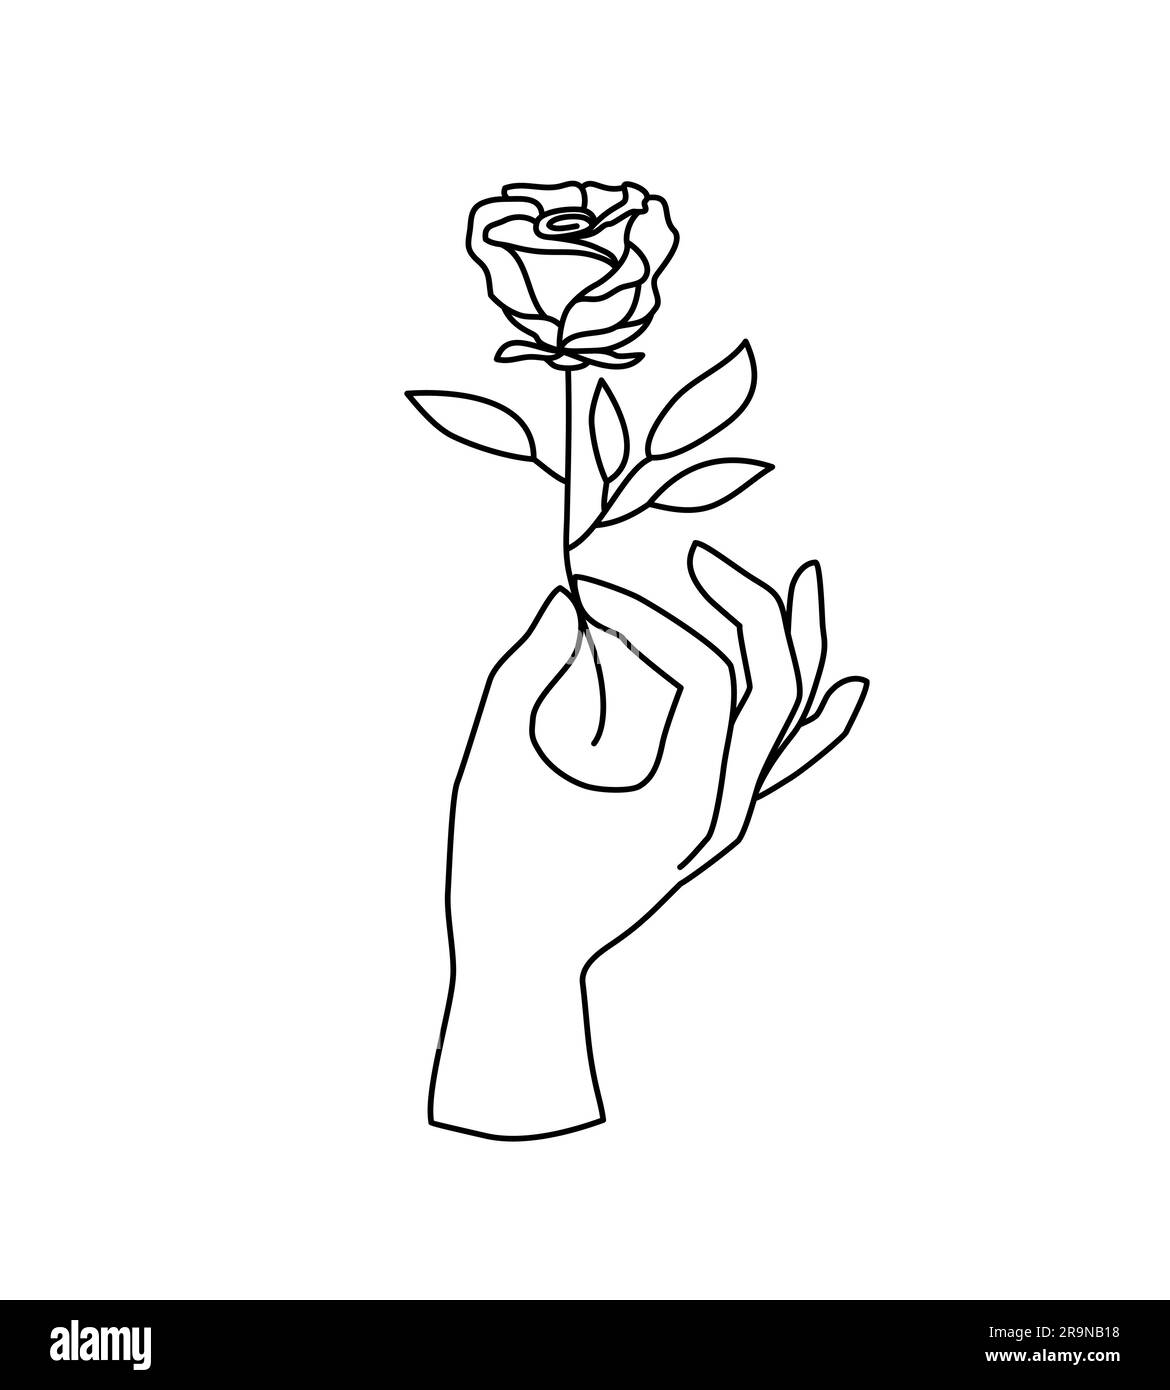 Logo de main femelle Vector, icône dans un style linéaire minimal. Modèle de conception d'emblème avec mouvement de la main tenant fleur rose pour cosmétiques, manucure, beauté, t Illustration de Vecteur